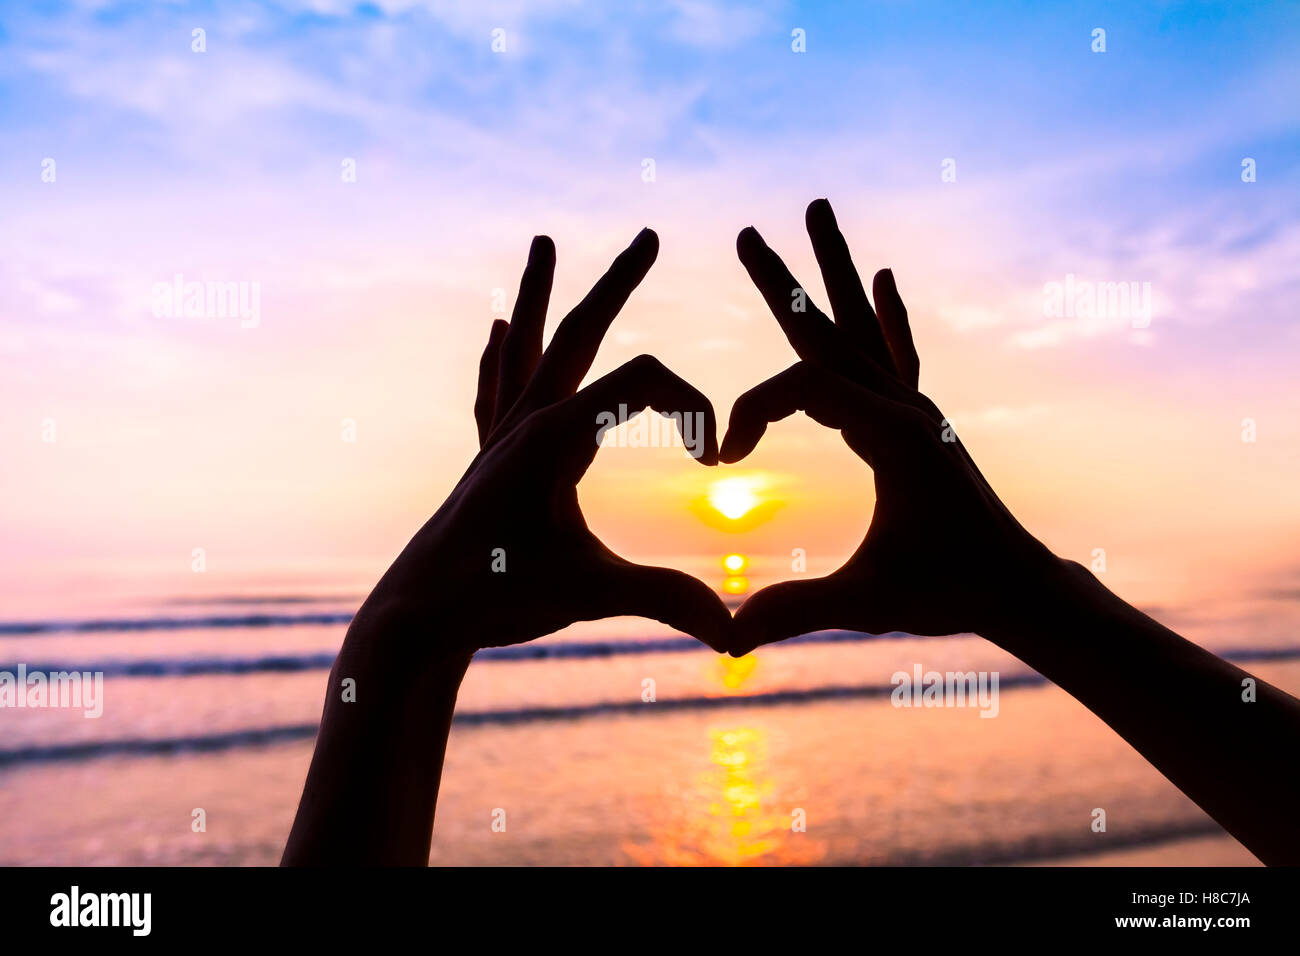 Frauenhand in der Form von Herzen mit Sonnenuntergang Hintergrund - Symbol für Liebe, Romantik, Freundschaft, Harmonie schaffen Stockfoto